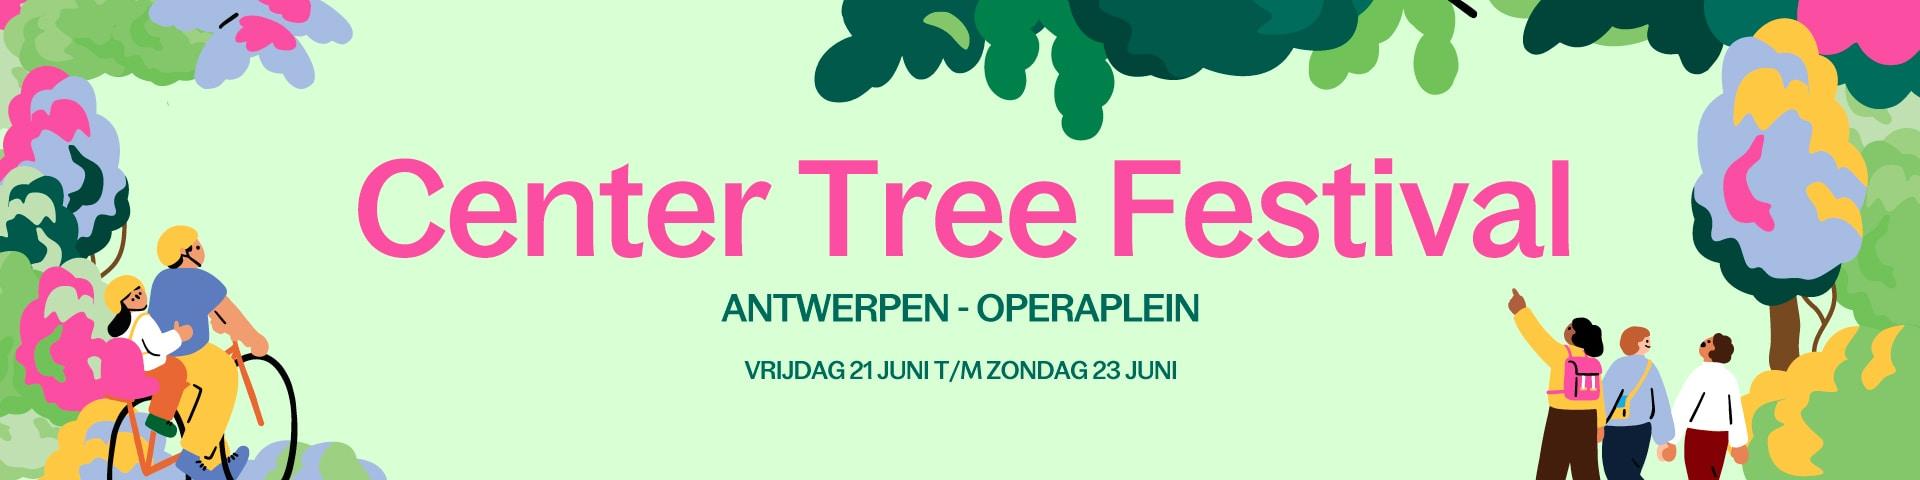 Center Tree Festival